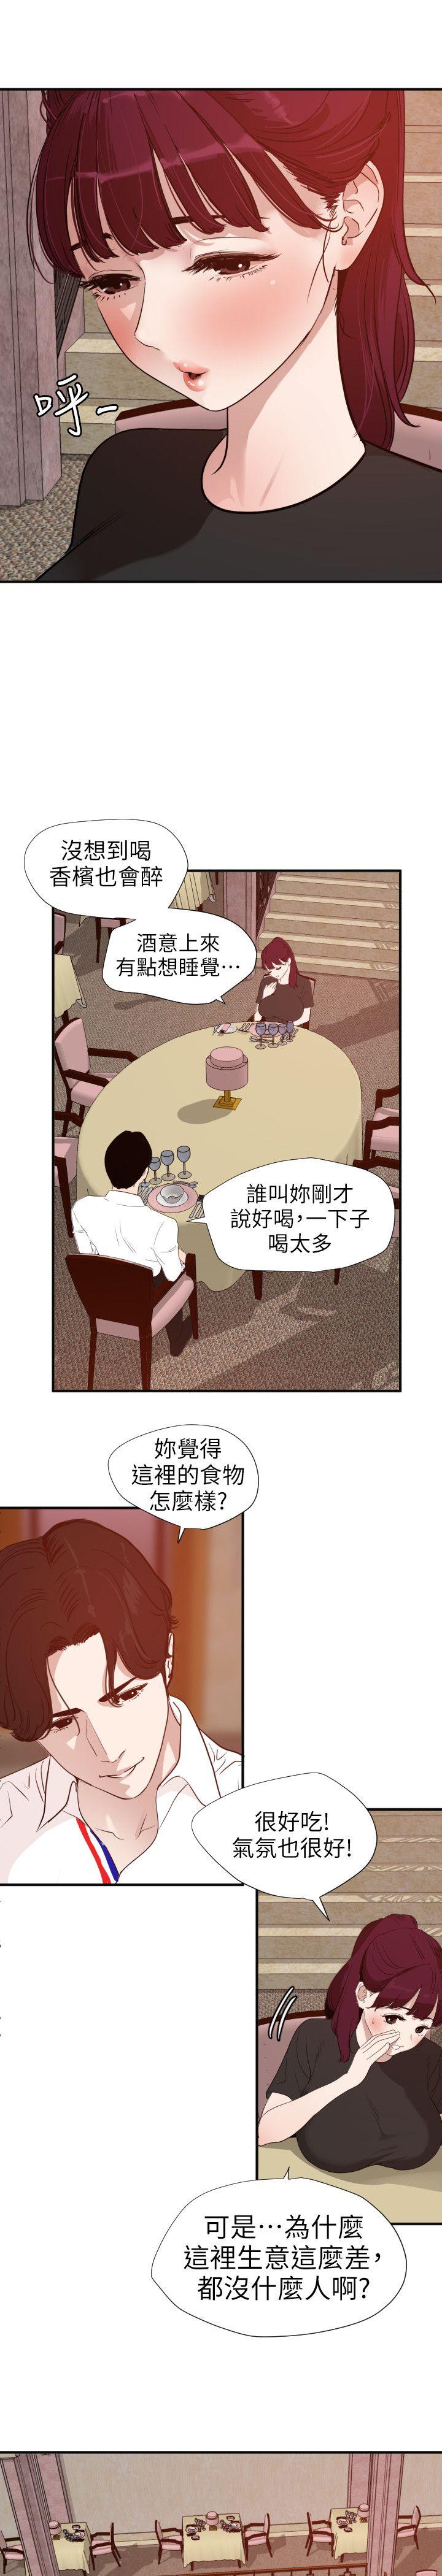 韩国污漫画 欲求王 第108话-失语症 7